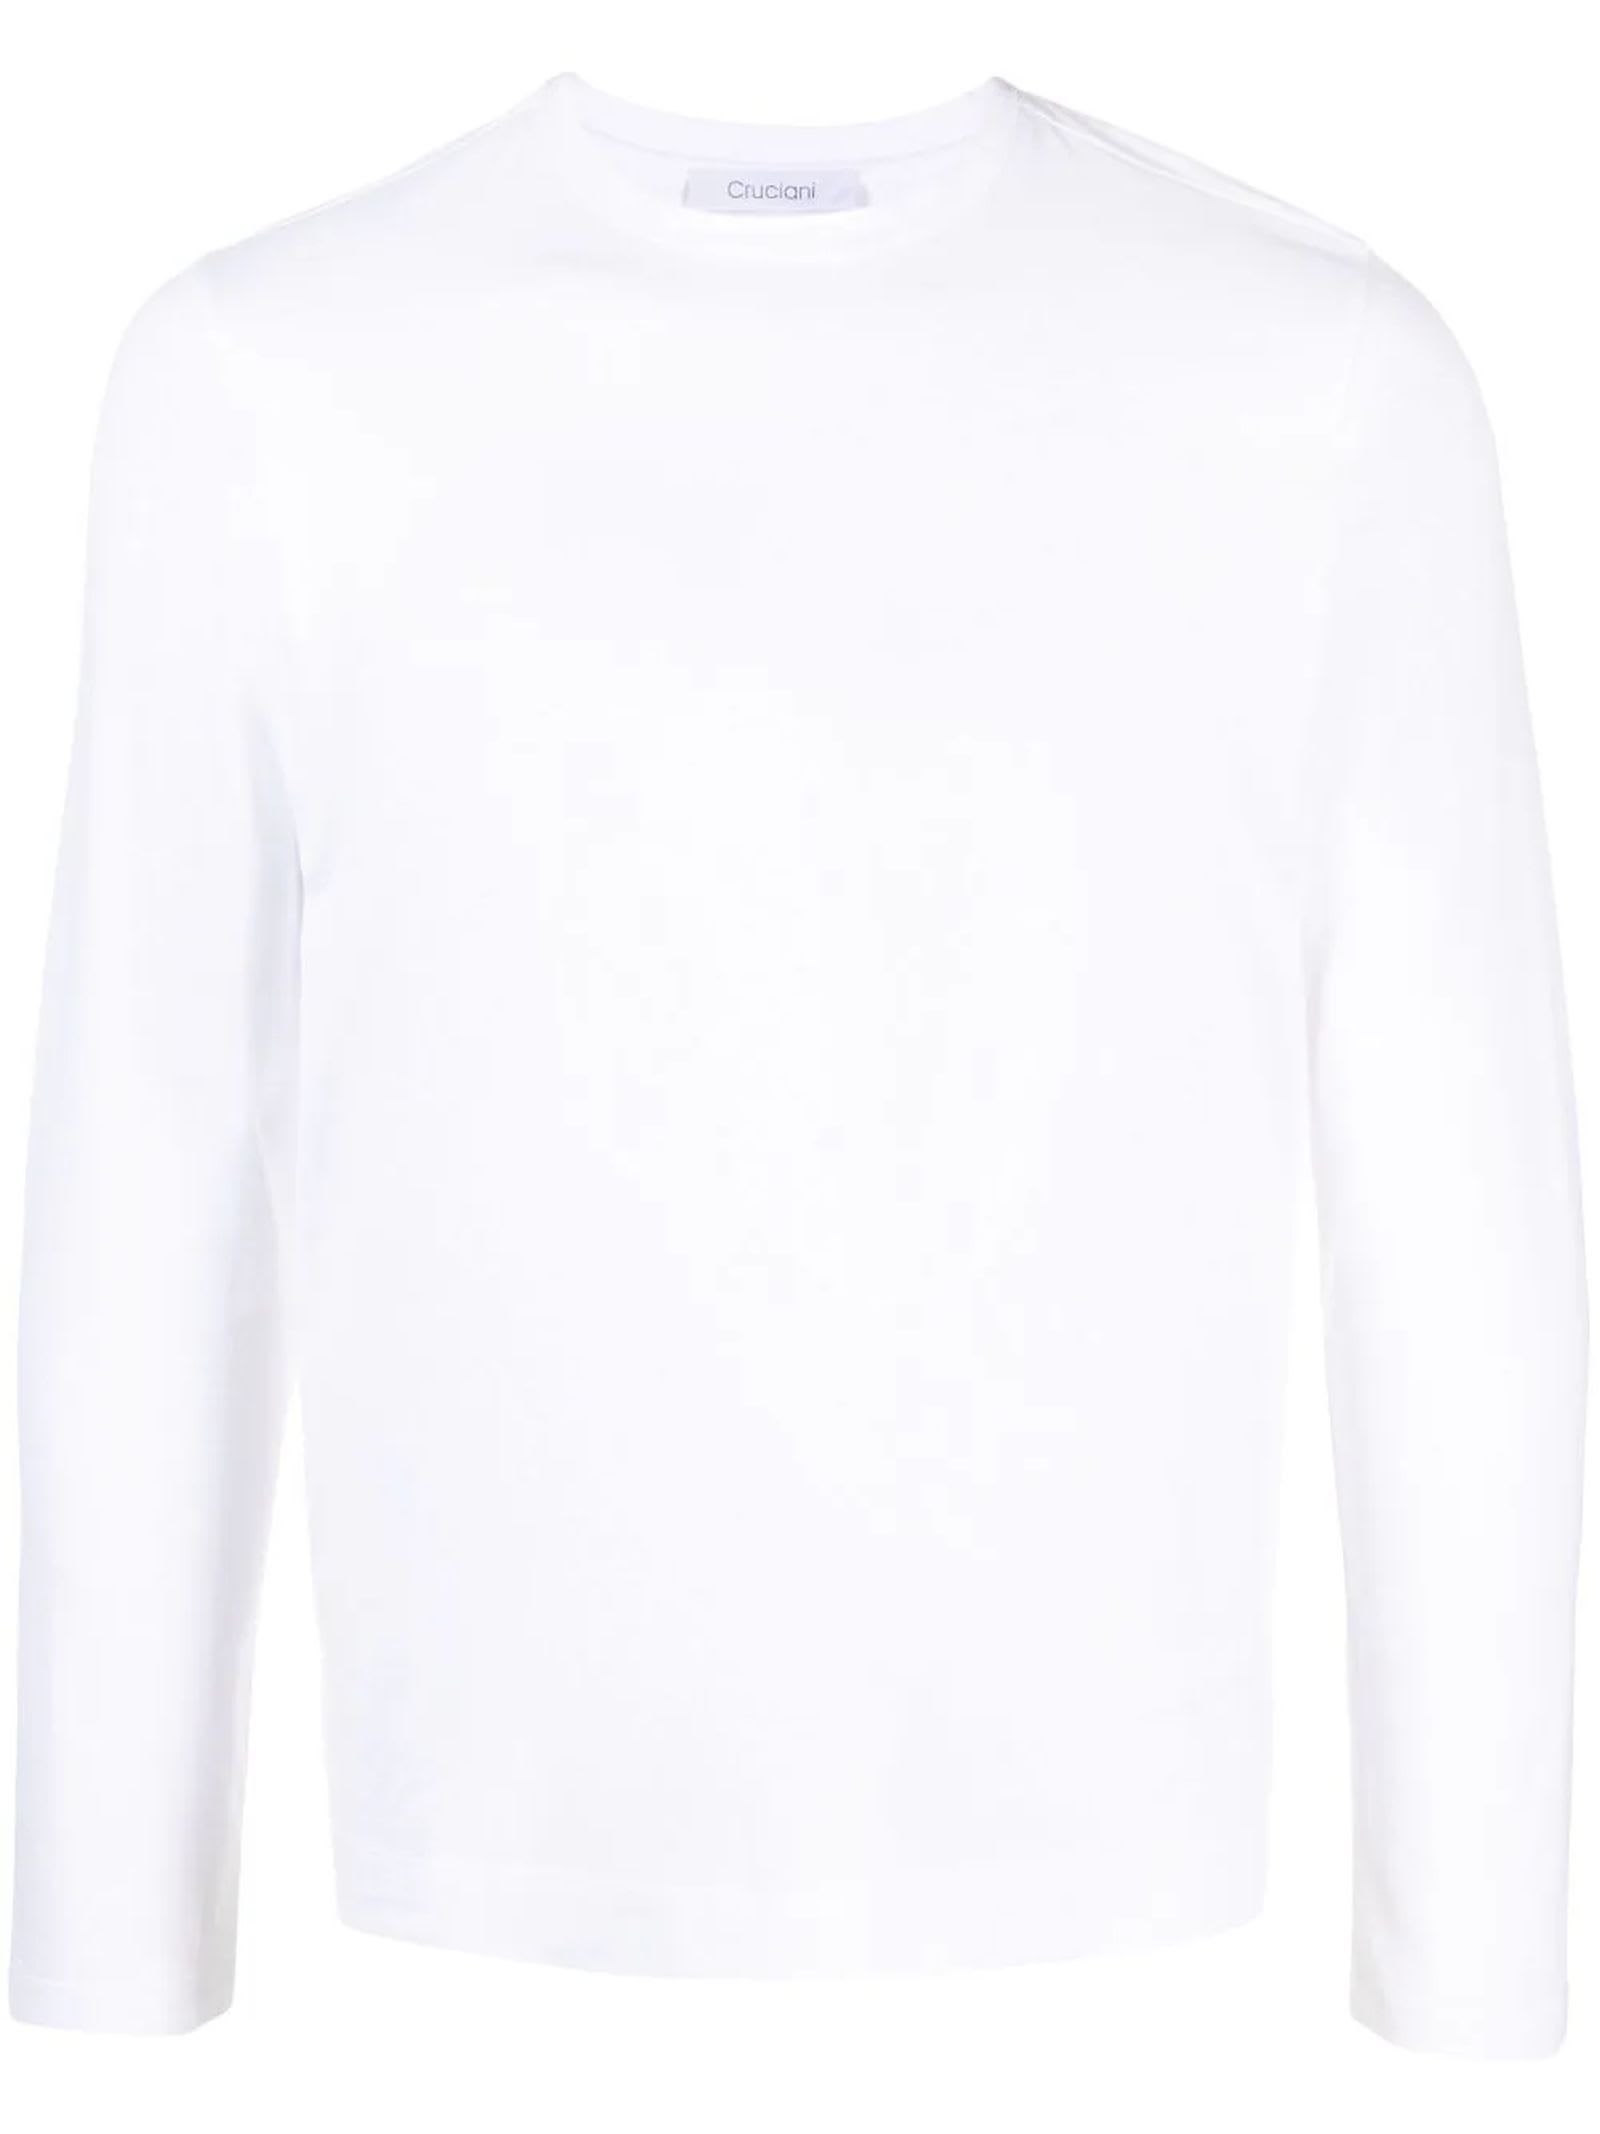 Cruciani White Stretch-cotton T-shirt